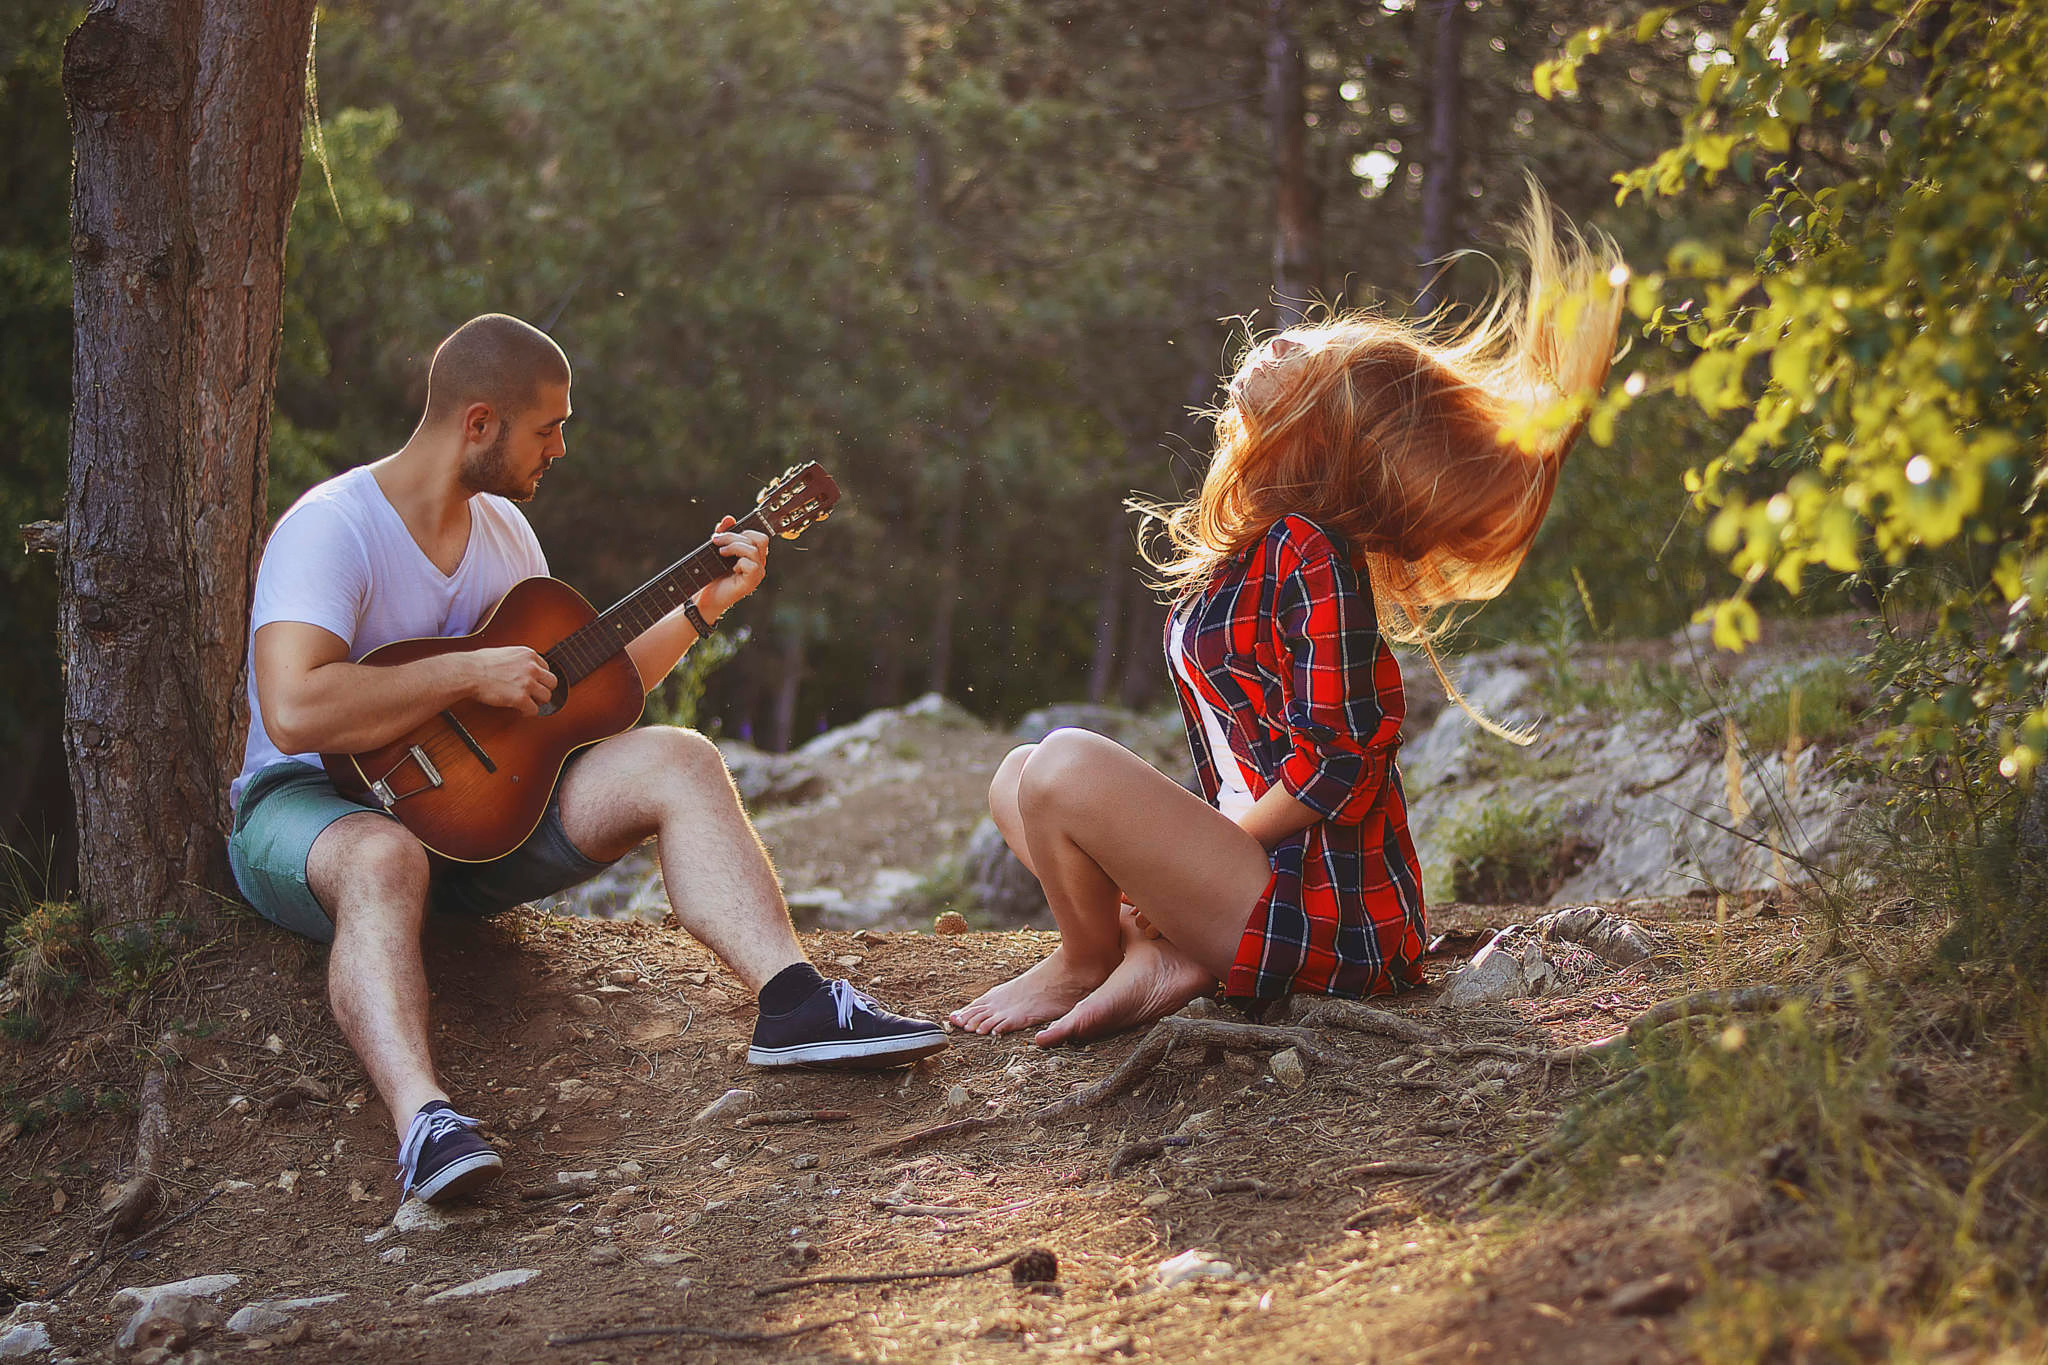 Послушать песню играть. Гитарист на природе. Фотосессия с гитарой. Девушка с гитарой на природе. Фотосессия с гитарой на природе.